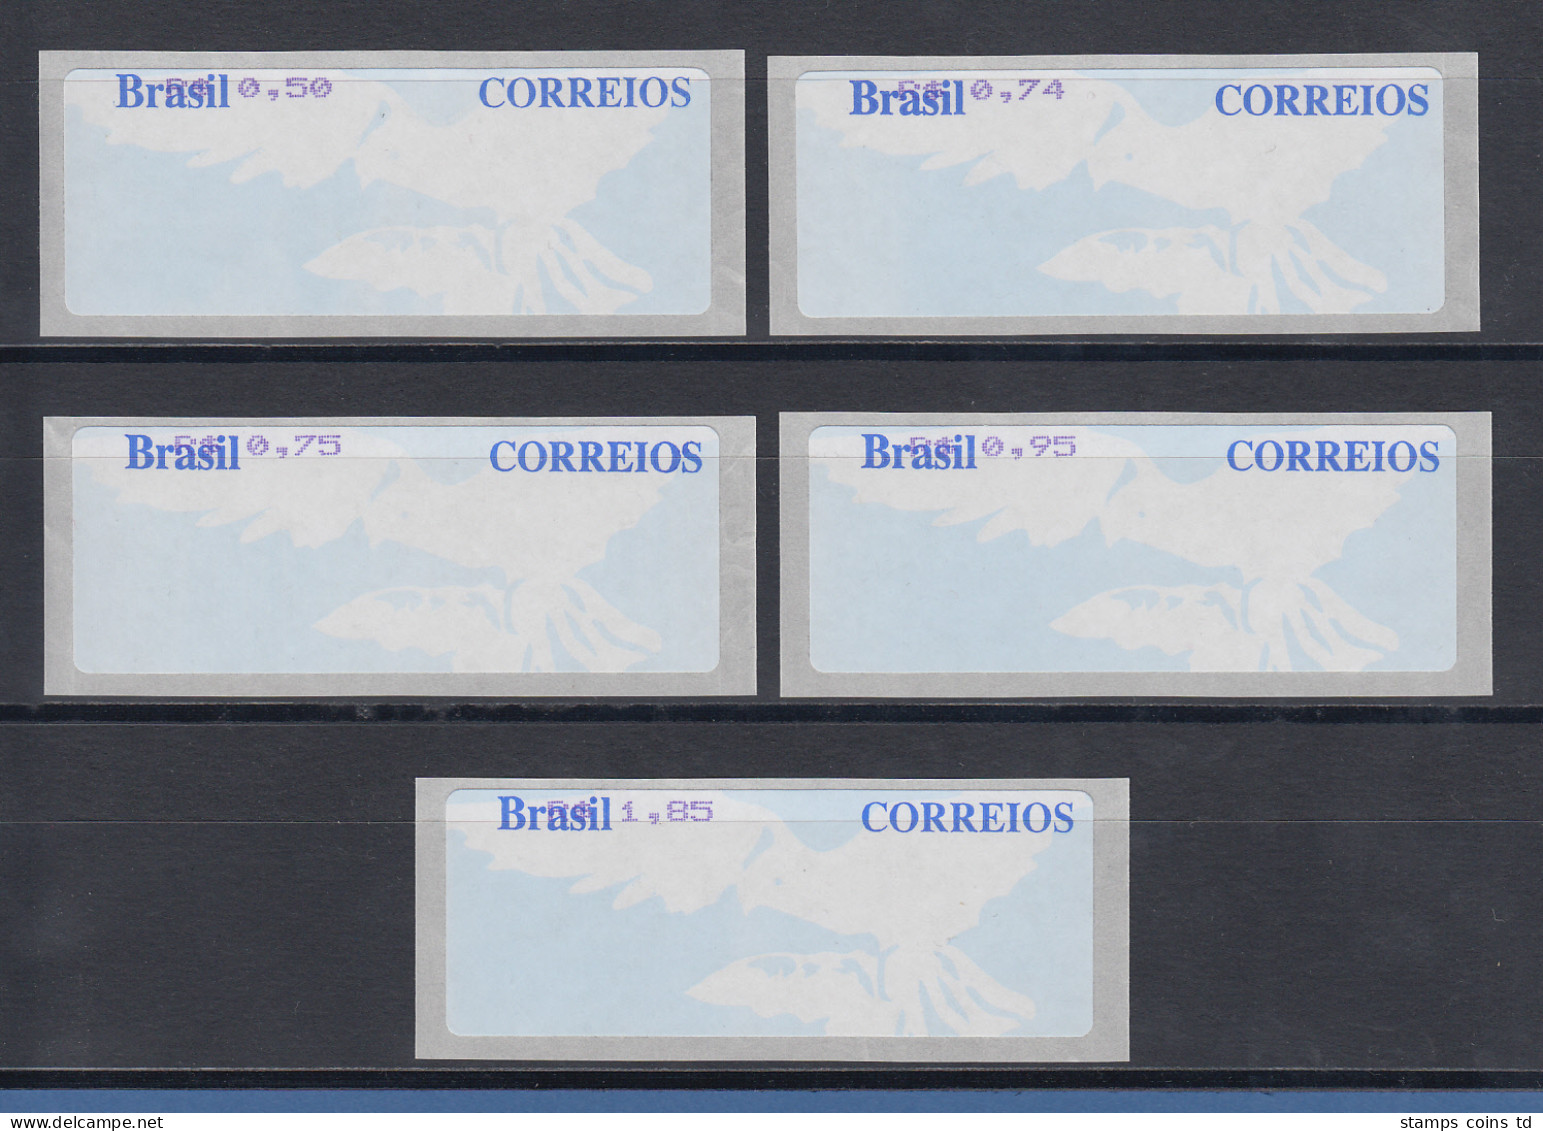 Brasilien ATM Taube, Werteindruck Oben, Satz 5 Werte 50-74-75-95-185 ** - Franking Labels